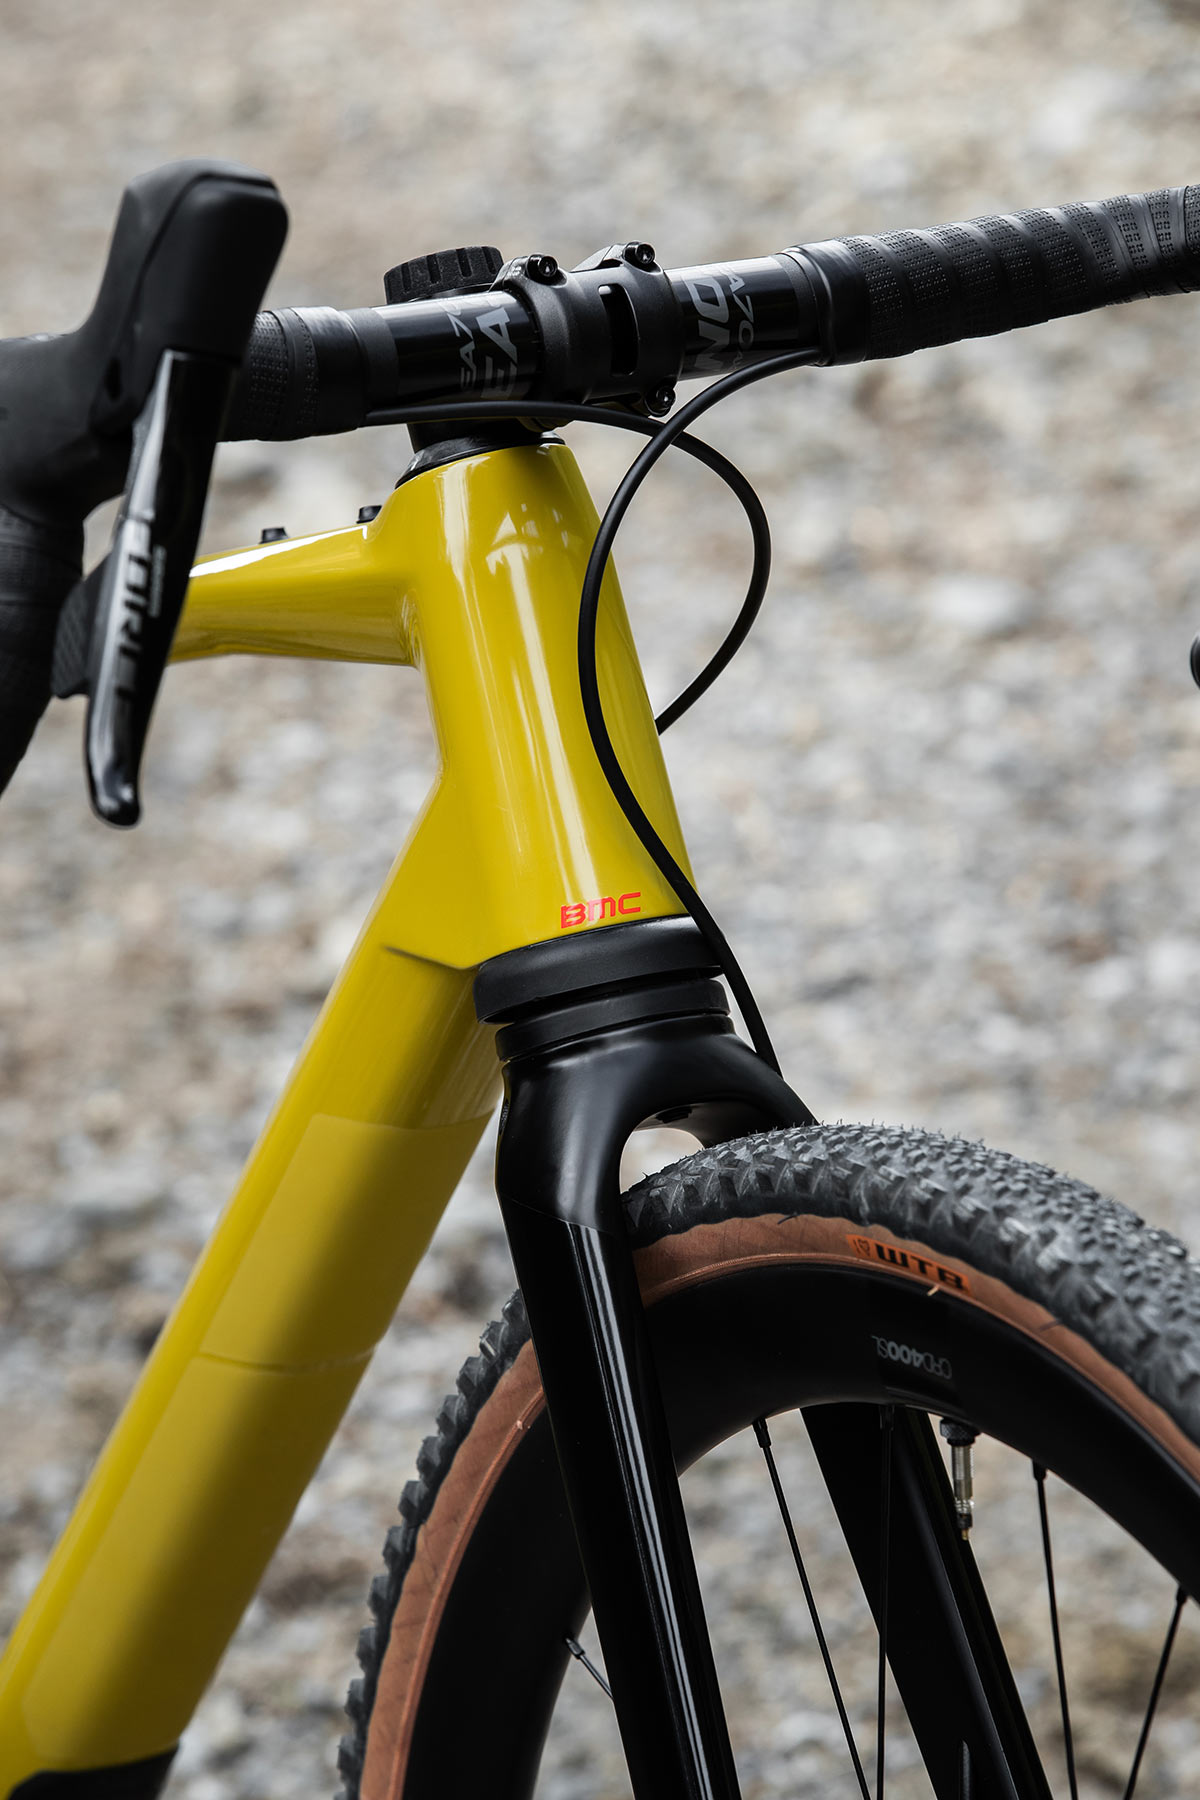 bmc urs lt full suspension gravel bike closeup on front fork